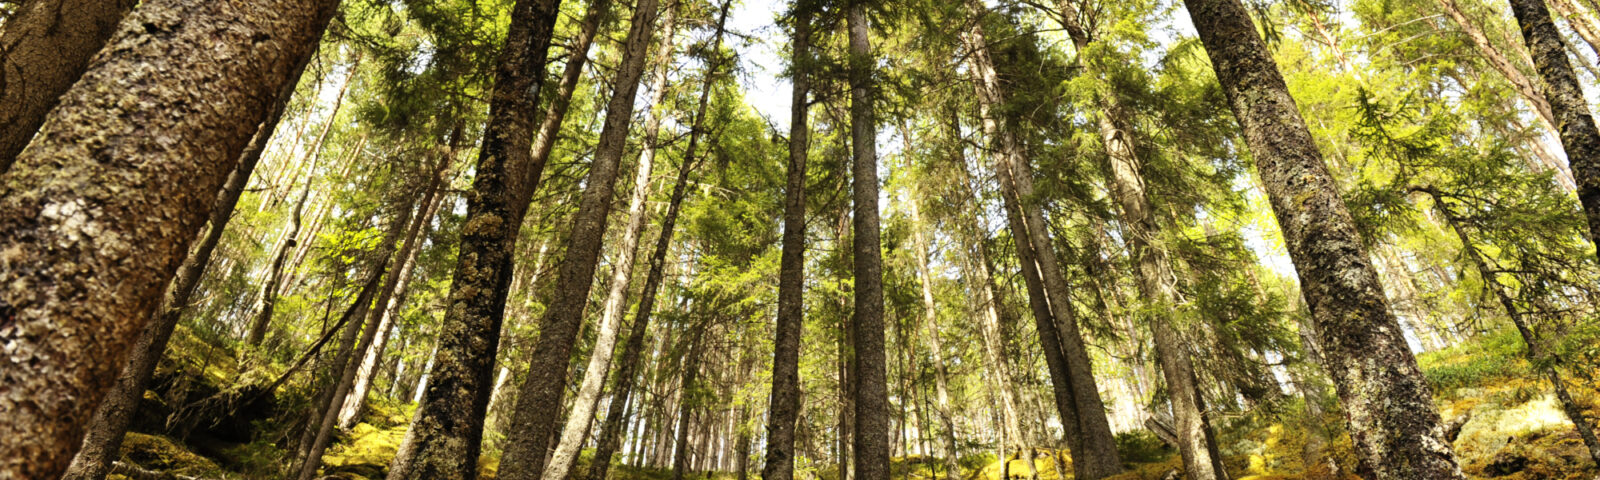 Bartrær i en norsk skog